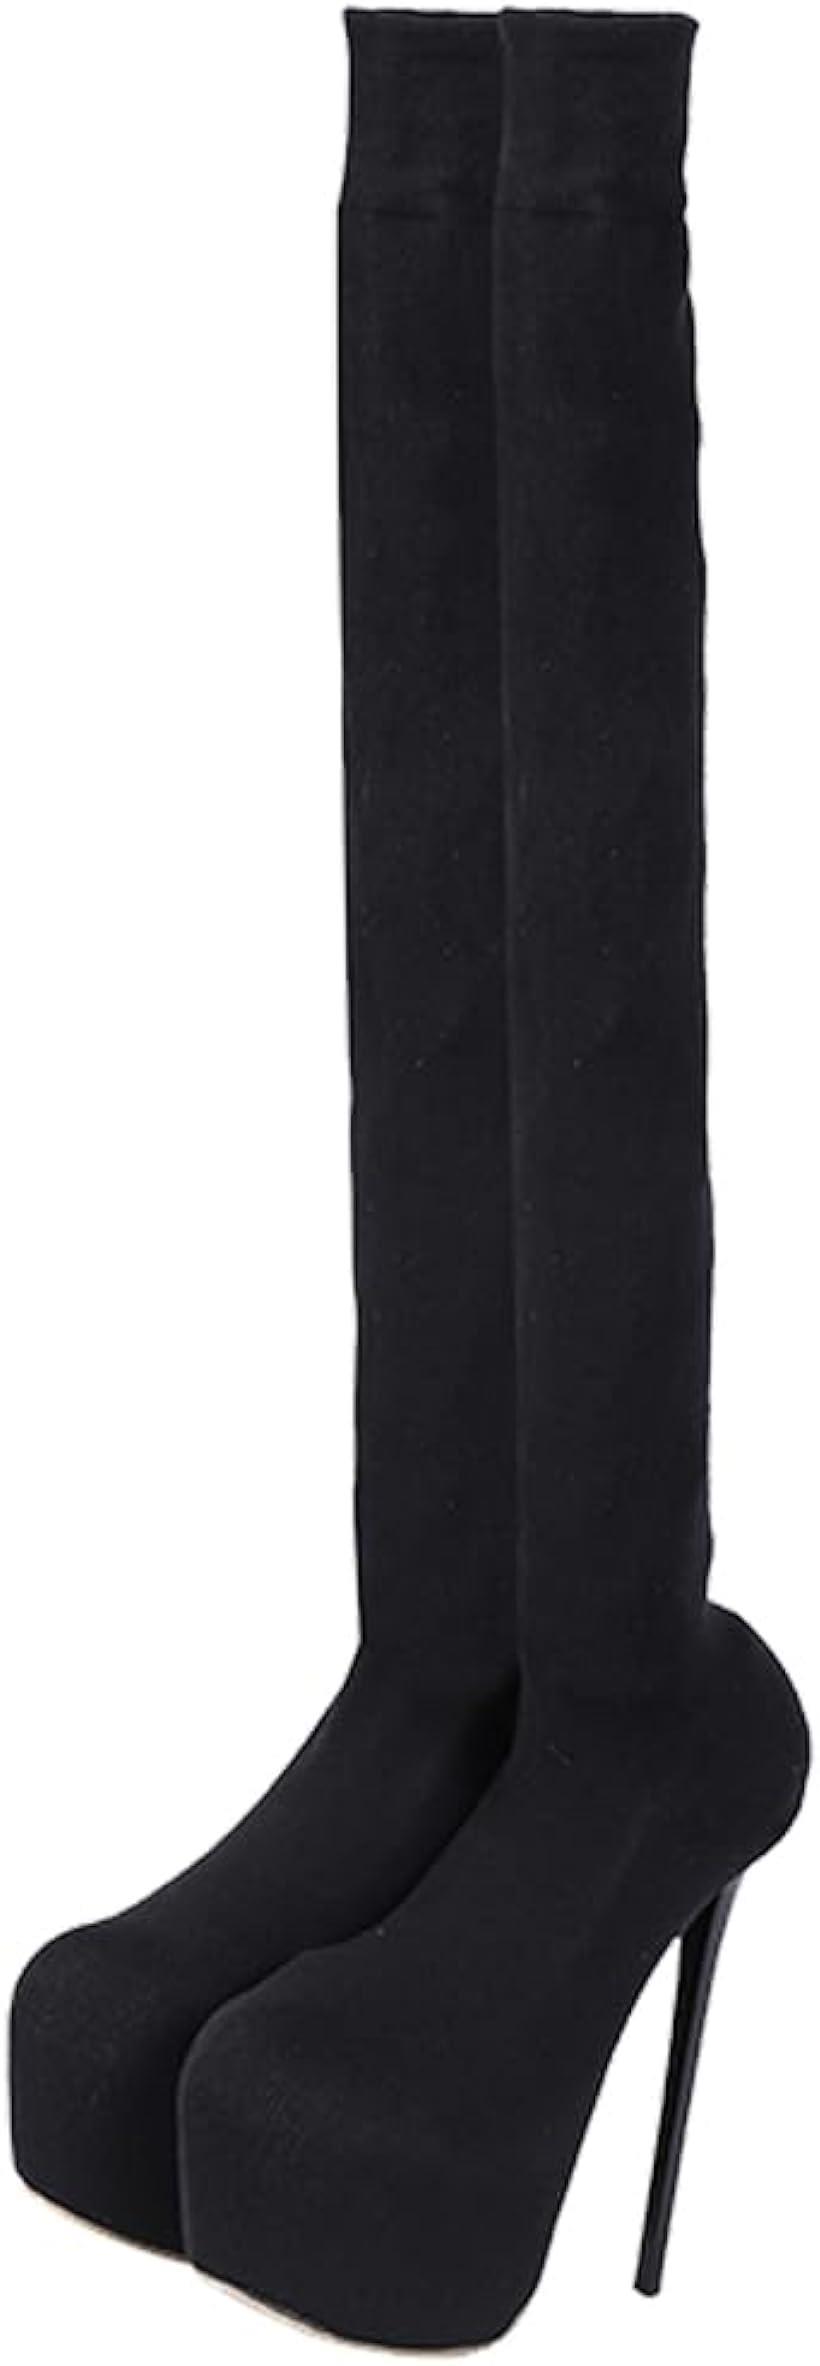 ニーハイブーツ レディース ロングブーツ ピンヒール 15cm 膝上 柔らかい ストレッチロングブーツ 可愛い 暖かい 39( ブラック, 24.5 cm)